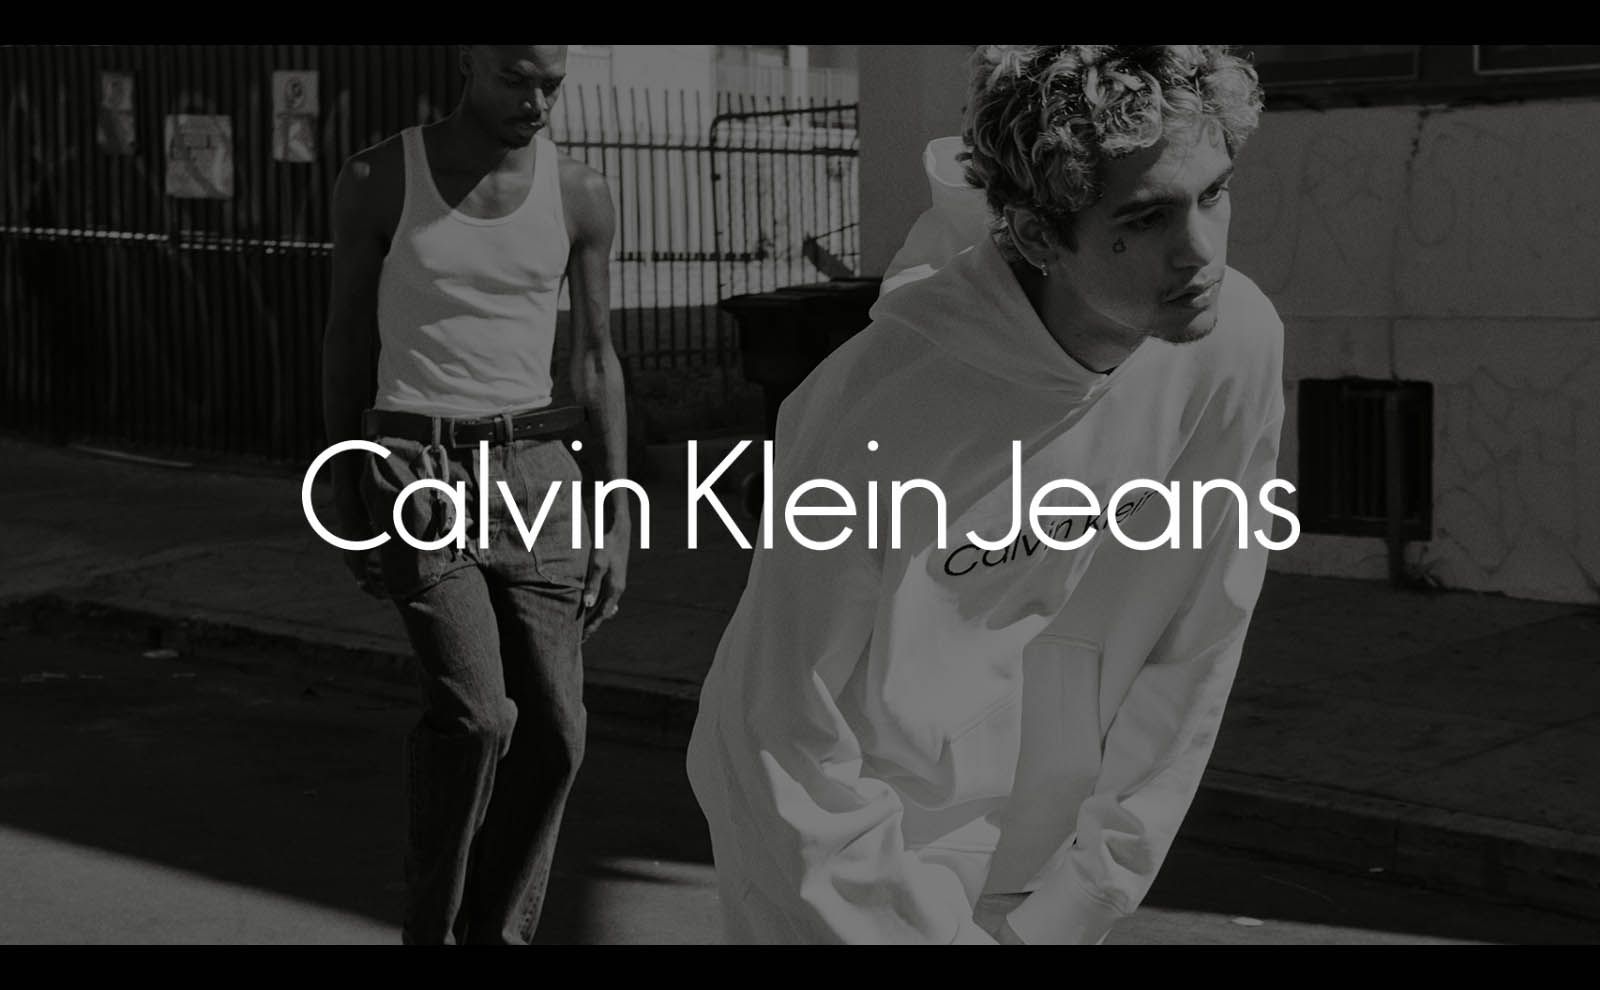 Calvin Klein Jeans 正規通販 (カルバン・クライン ジーンズ